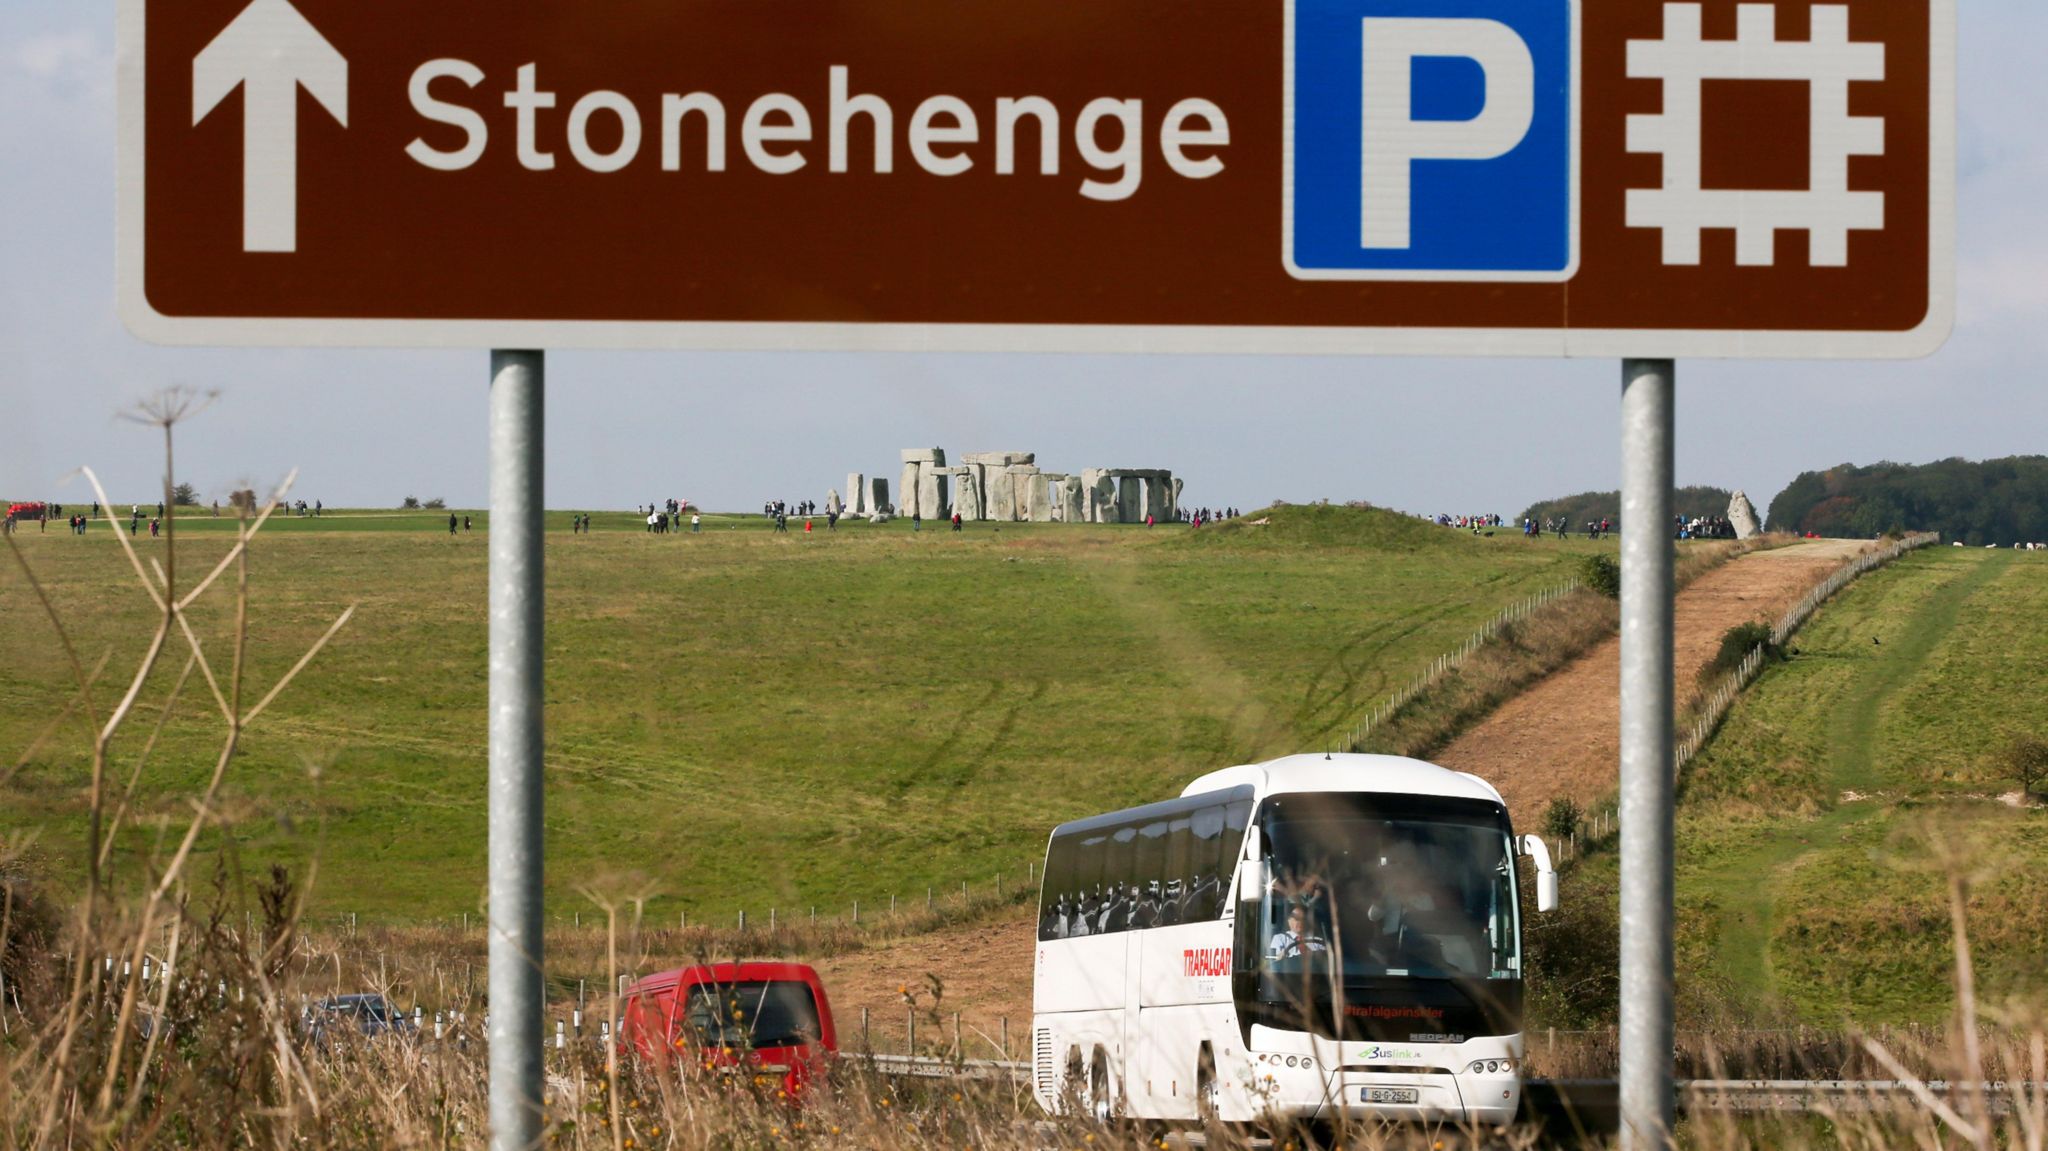 The A303 near Stonehenge